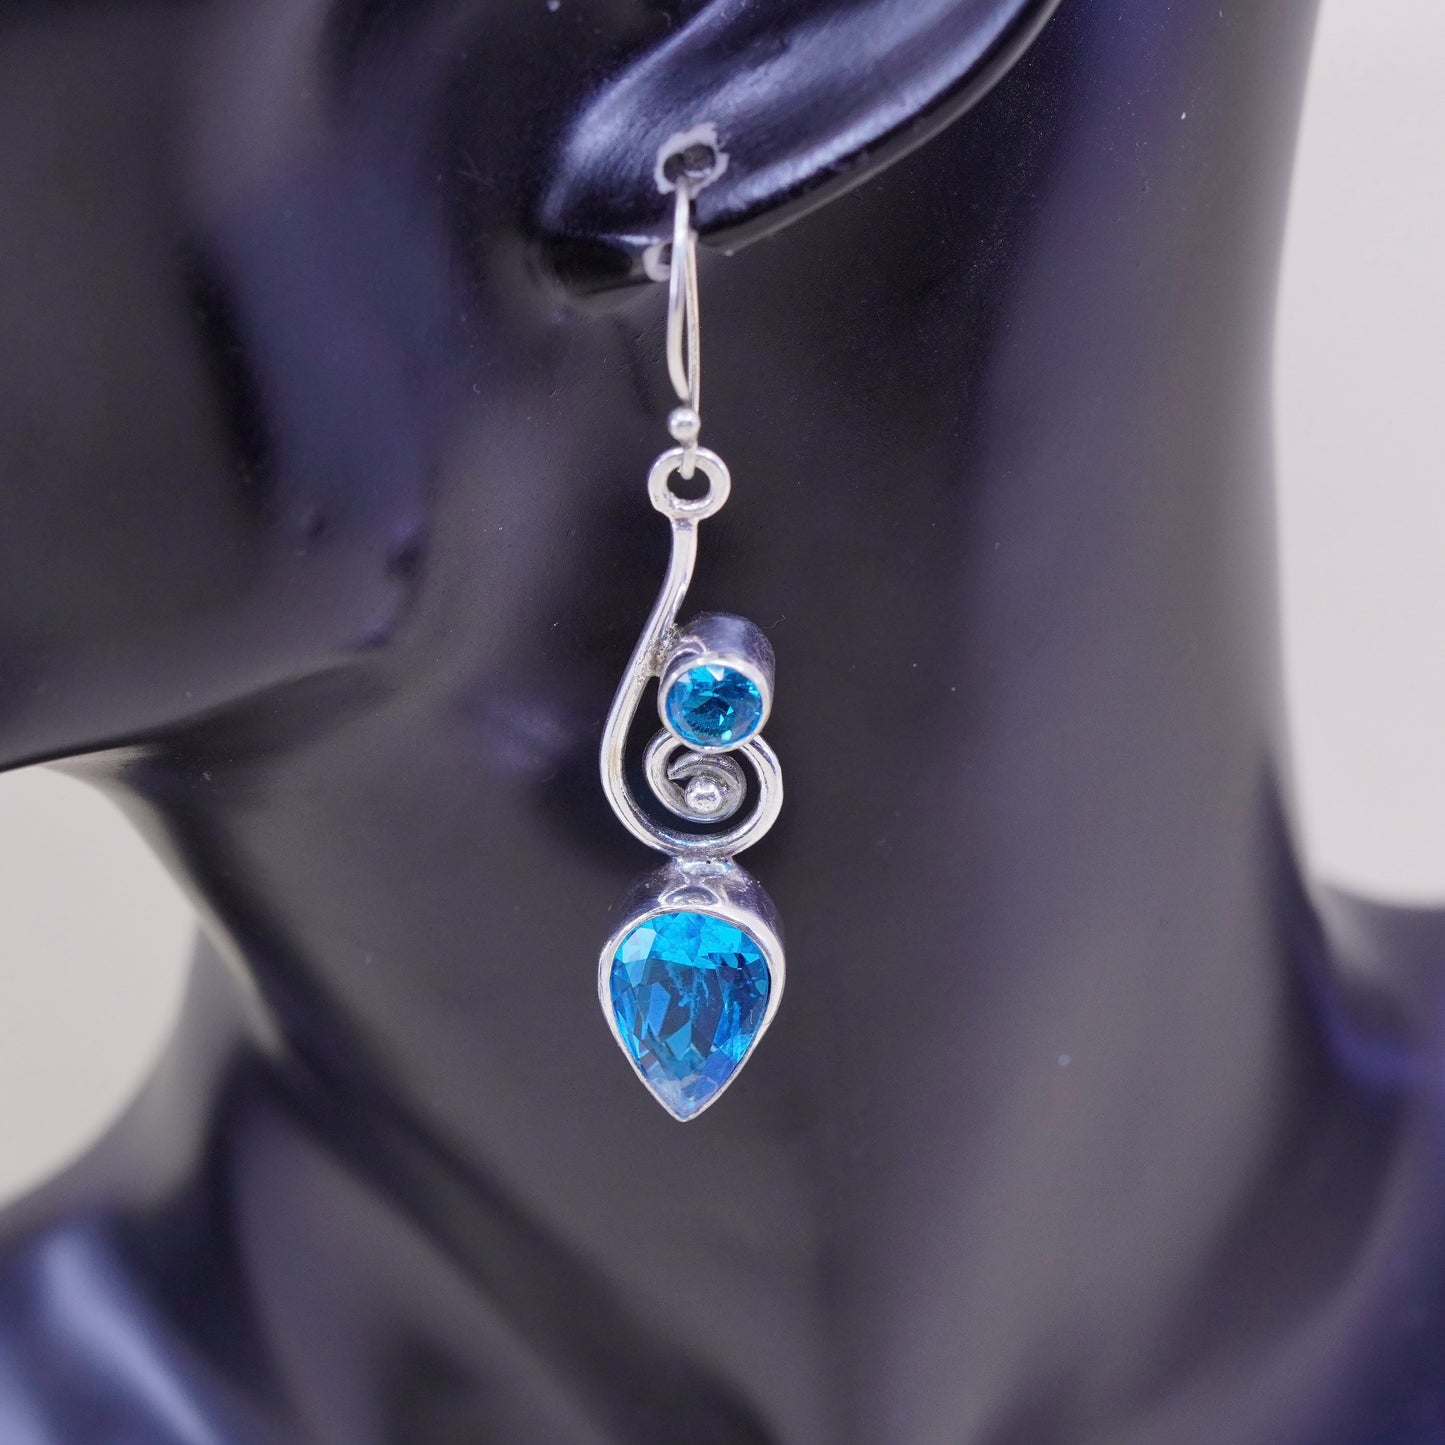 Vintage sterling silver handmade earrings, 925 with teardrop blue topaz drops